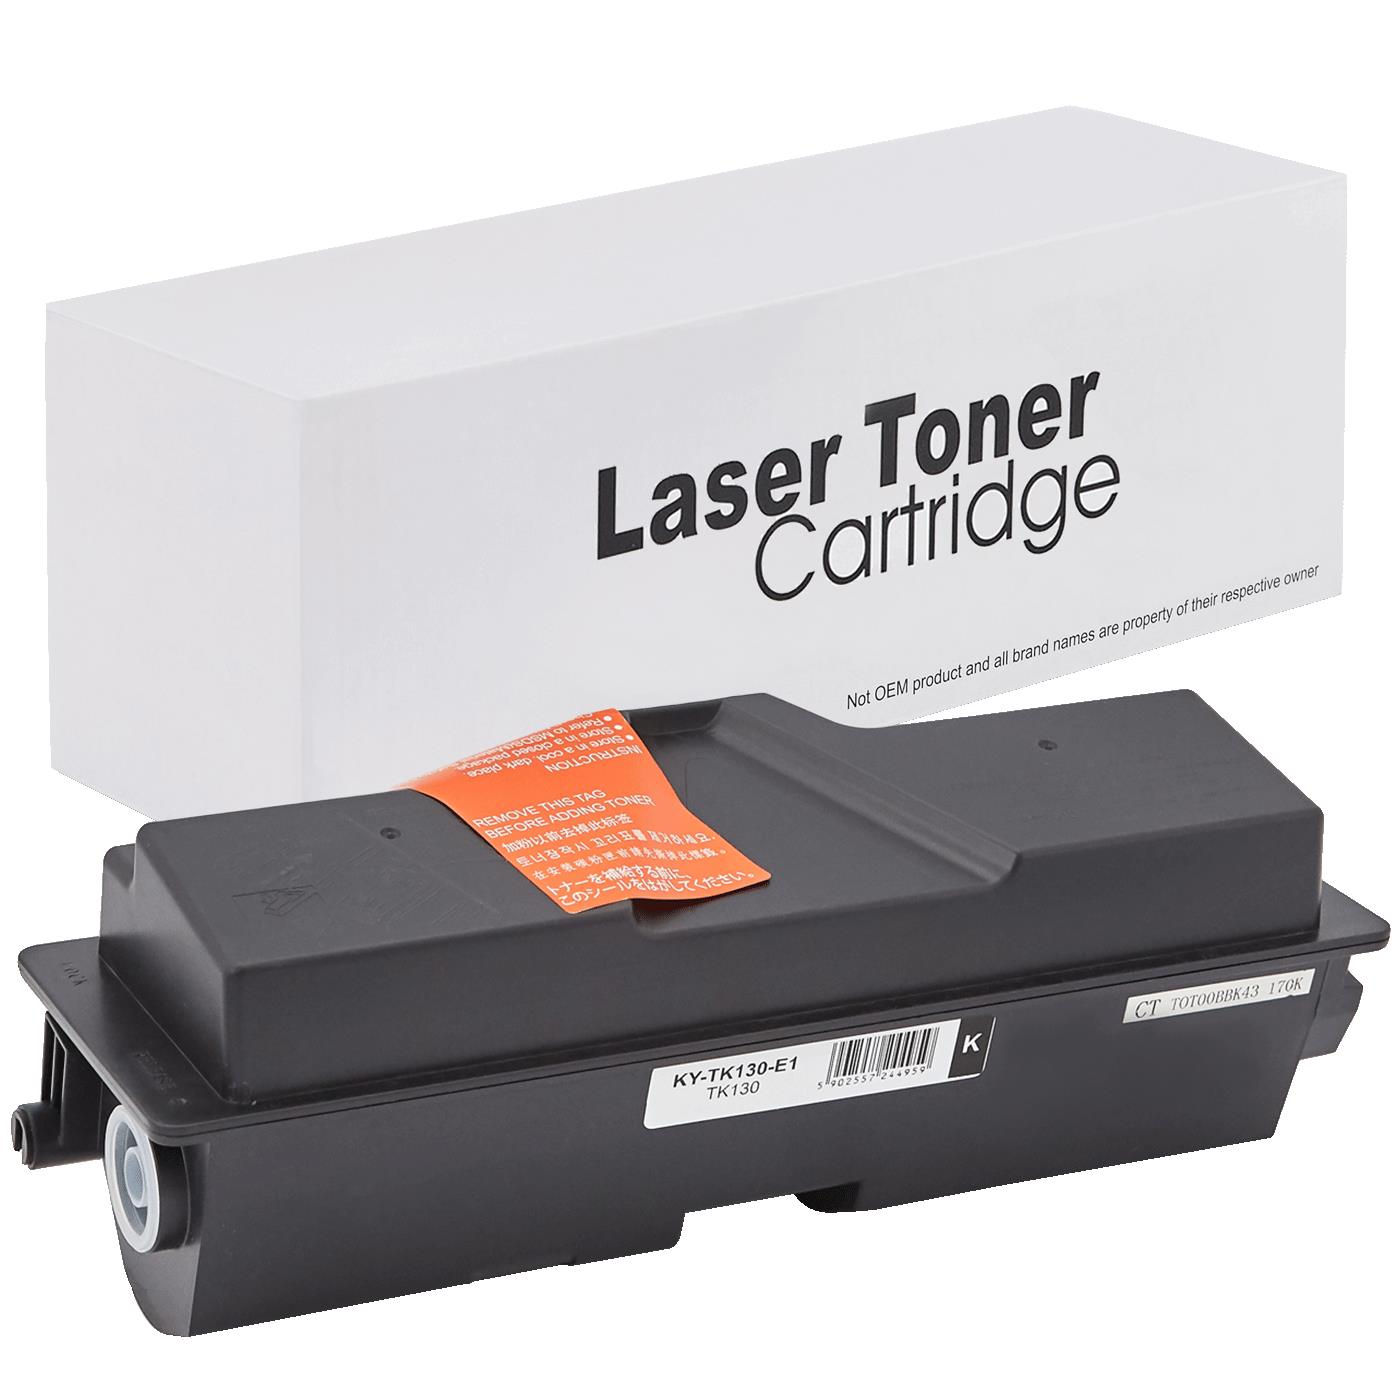 съвместима тонер касета за принтери и печатащи устройства на Kyocera Mita FS 1128MFP Toner KY-TK130 | TK130. Ниски цени, прецизно изпълнение, високо качество.